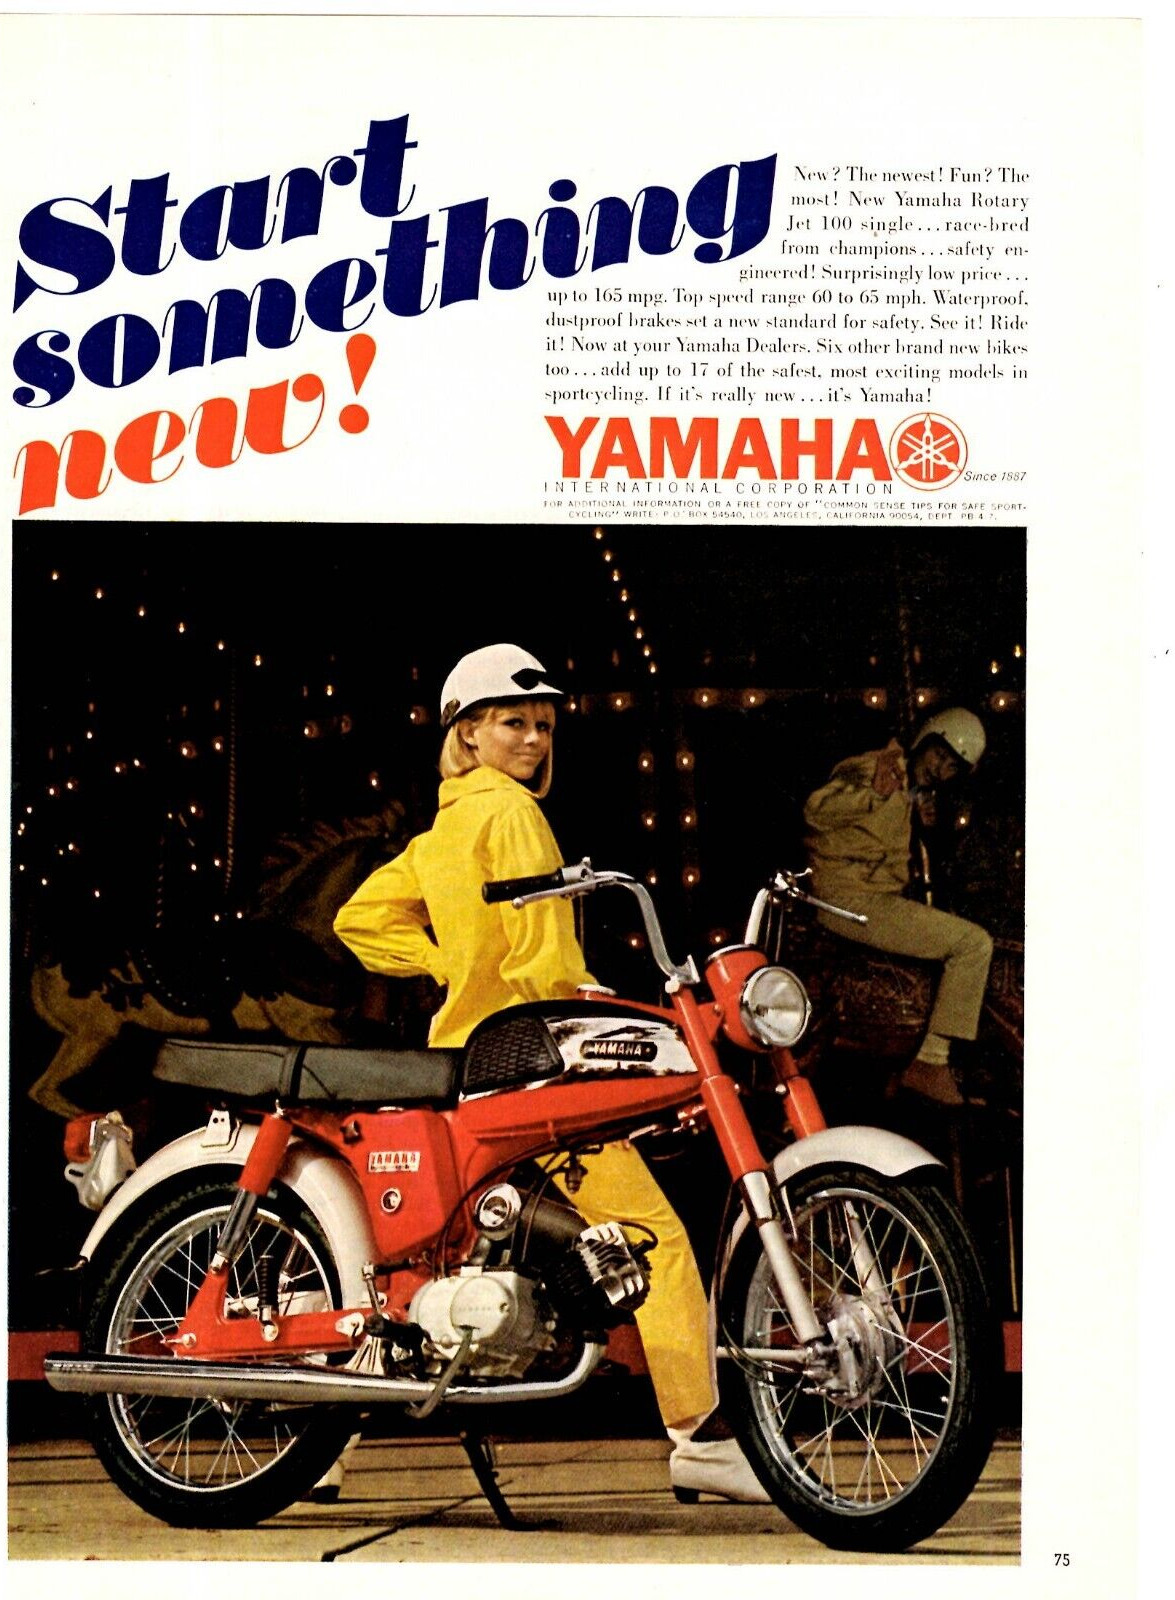 1967 Print Ad Yamaha Motorcyle Rotary Jet 100 Single Start something new